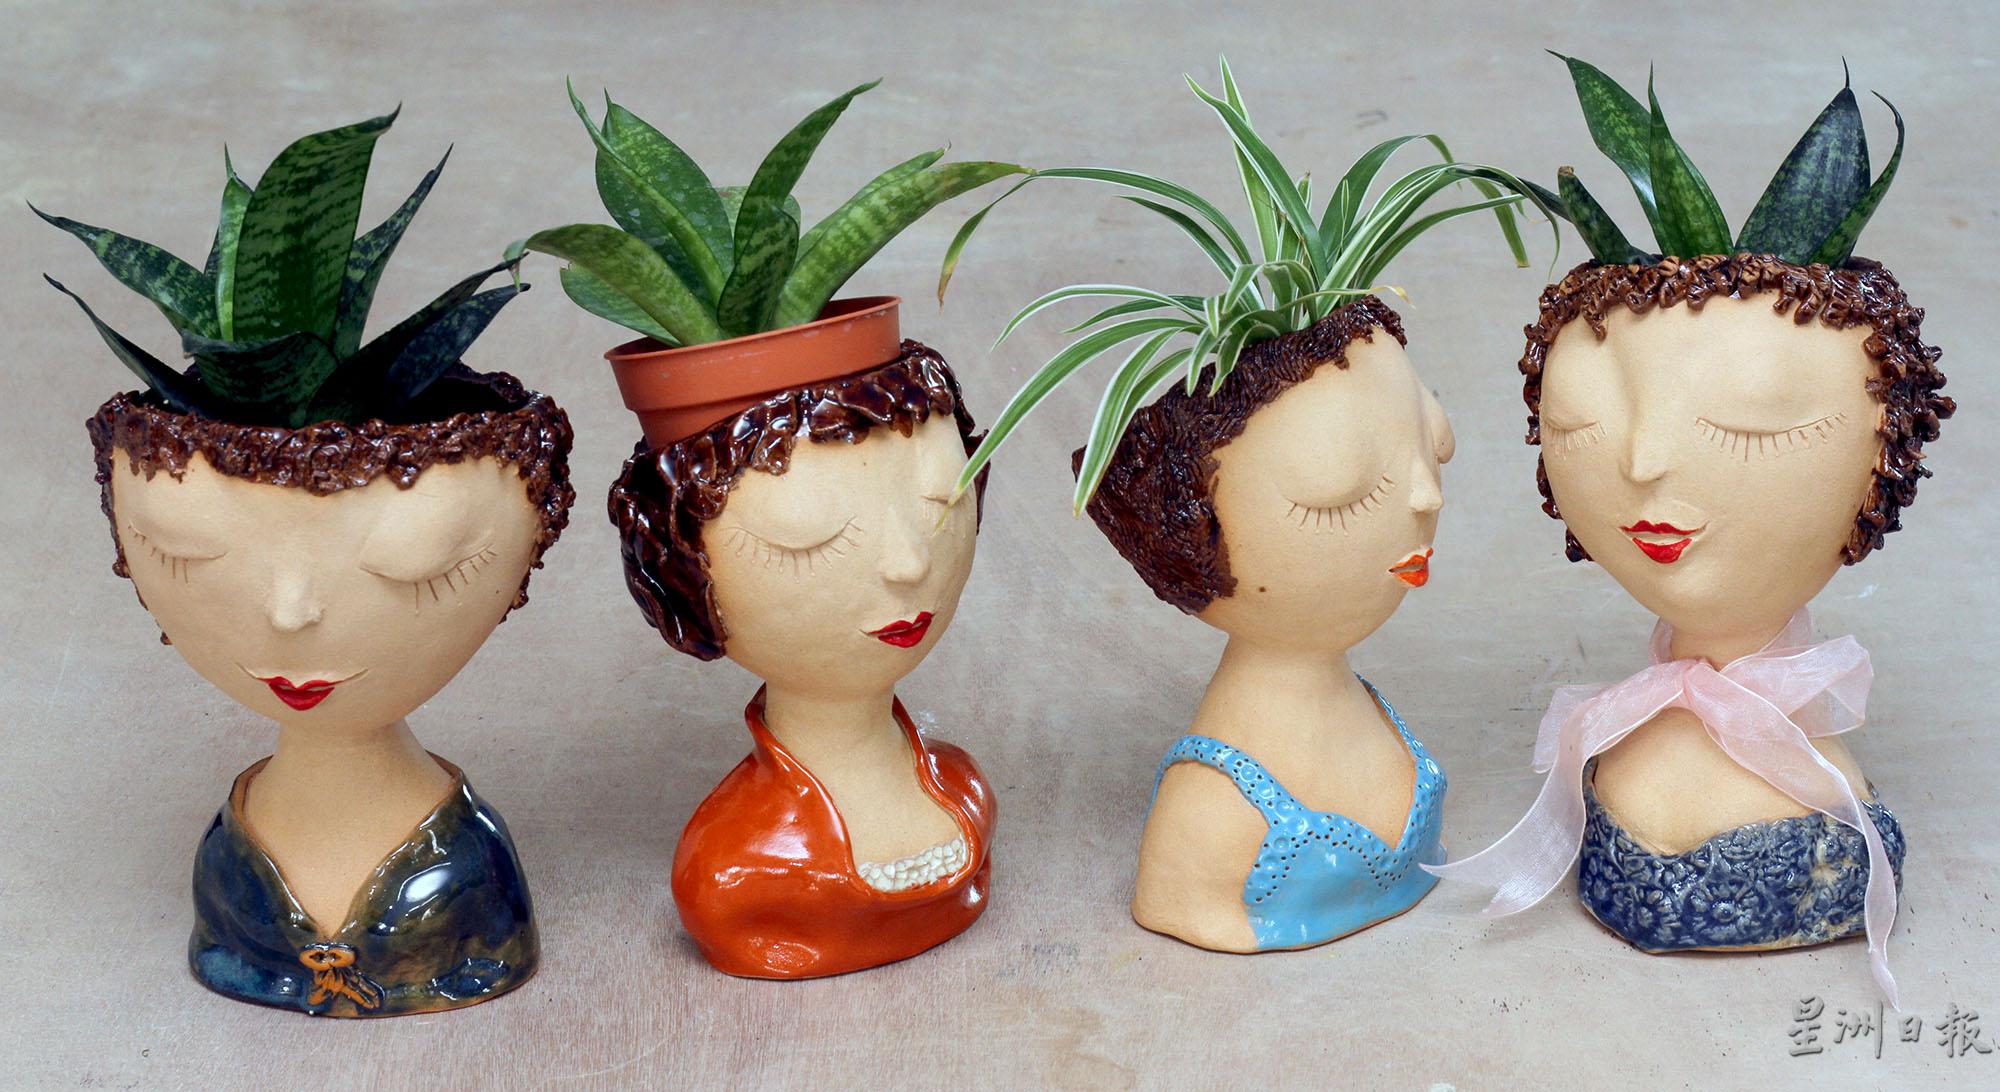 人像陶艺的头部设计成可以充作花盆，置放绿色植物，美观又实用。

